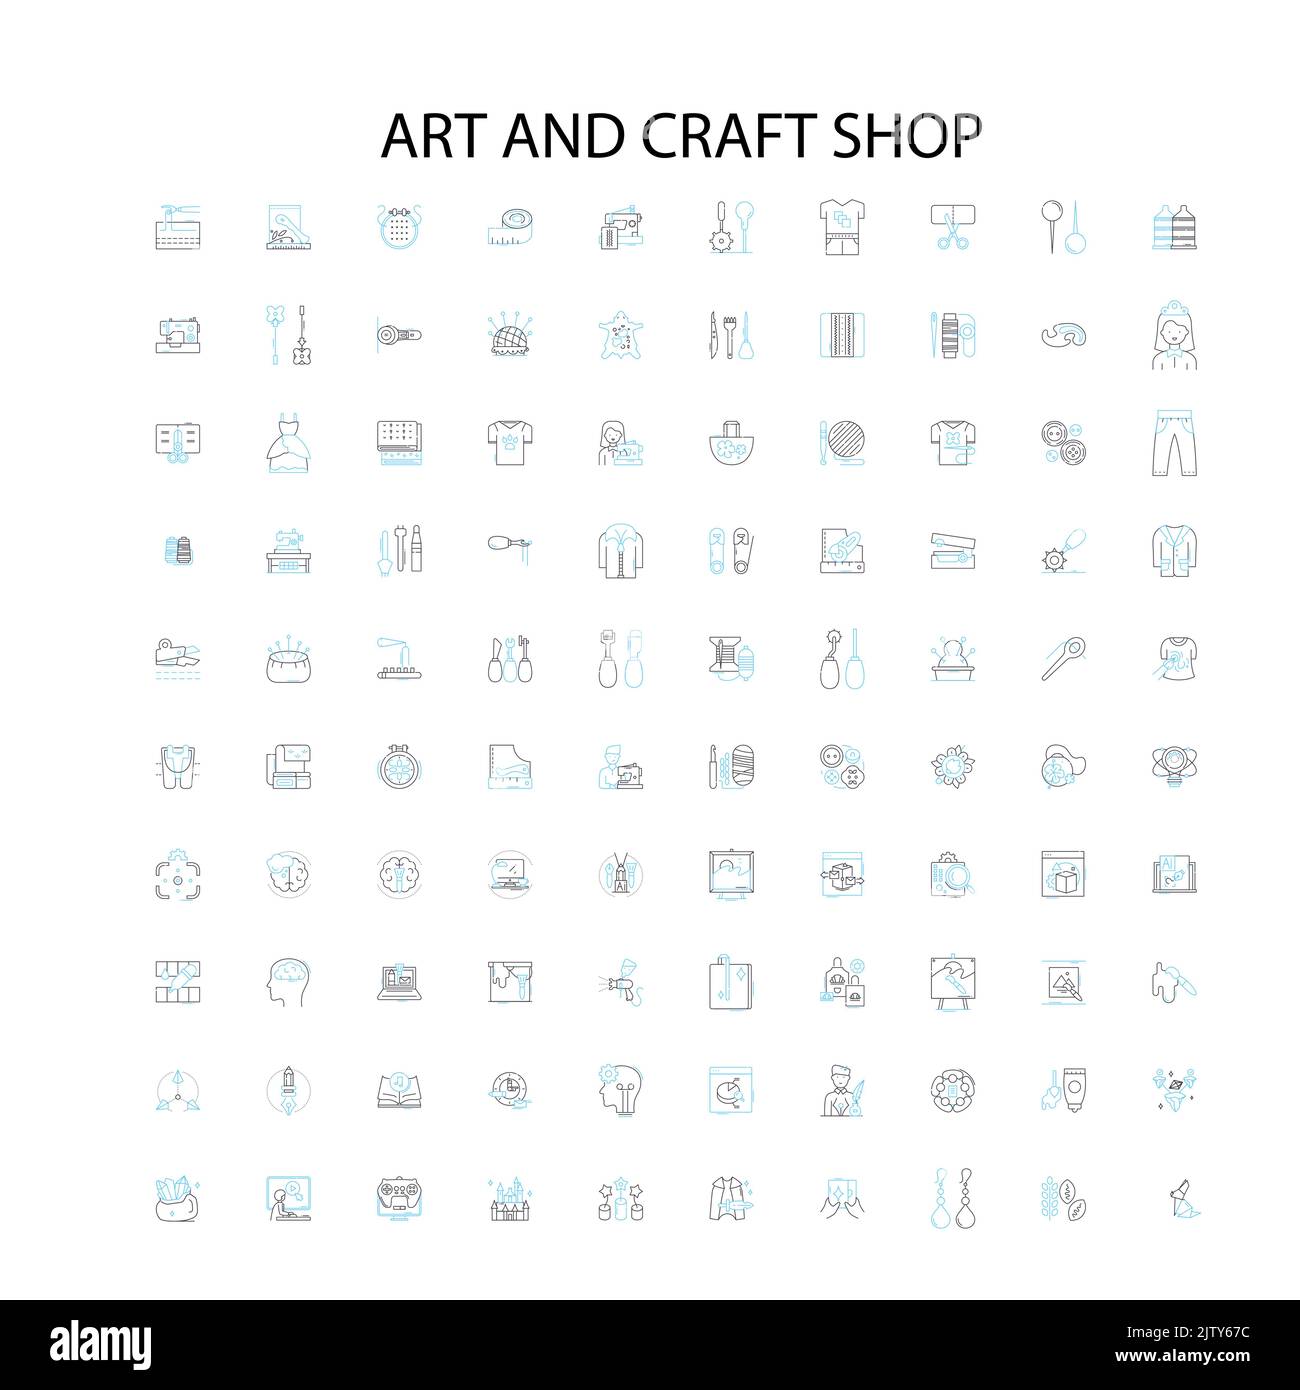 icone di negozi d'arte e artigianato, insegne, simboli di contorno, concept lineare illustrazione collezione di linee Illustrazione Vettoriale